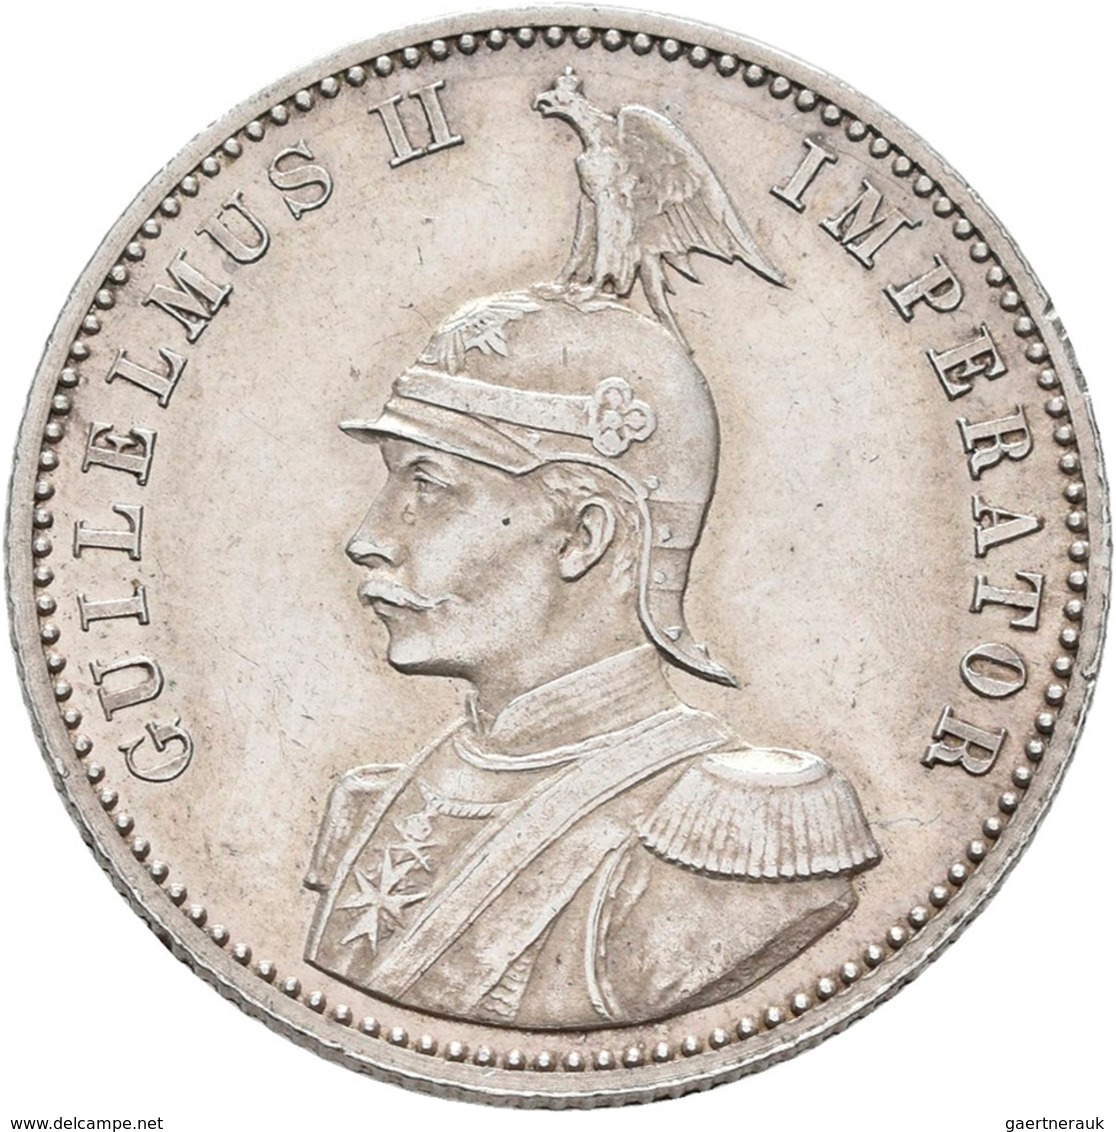 Deutsch-Ostafrika: DOA Und Danzig: 7 Münzen Aus Deutsch-Ostafrika Mit 1 Rupie 1905 J, ½ Rupie 1901 S - German East Africa